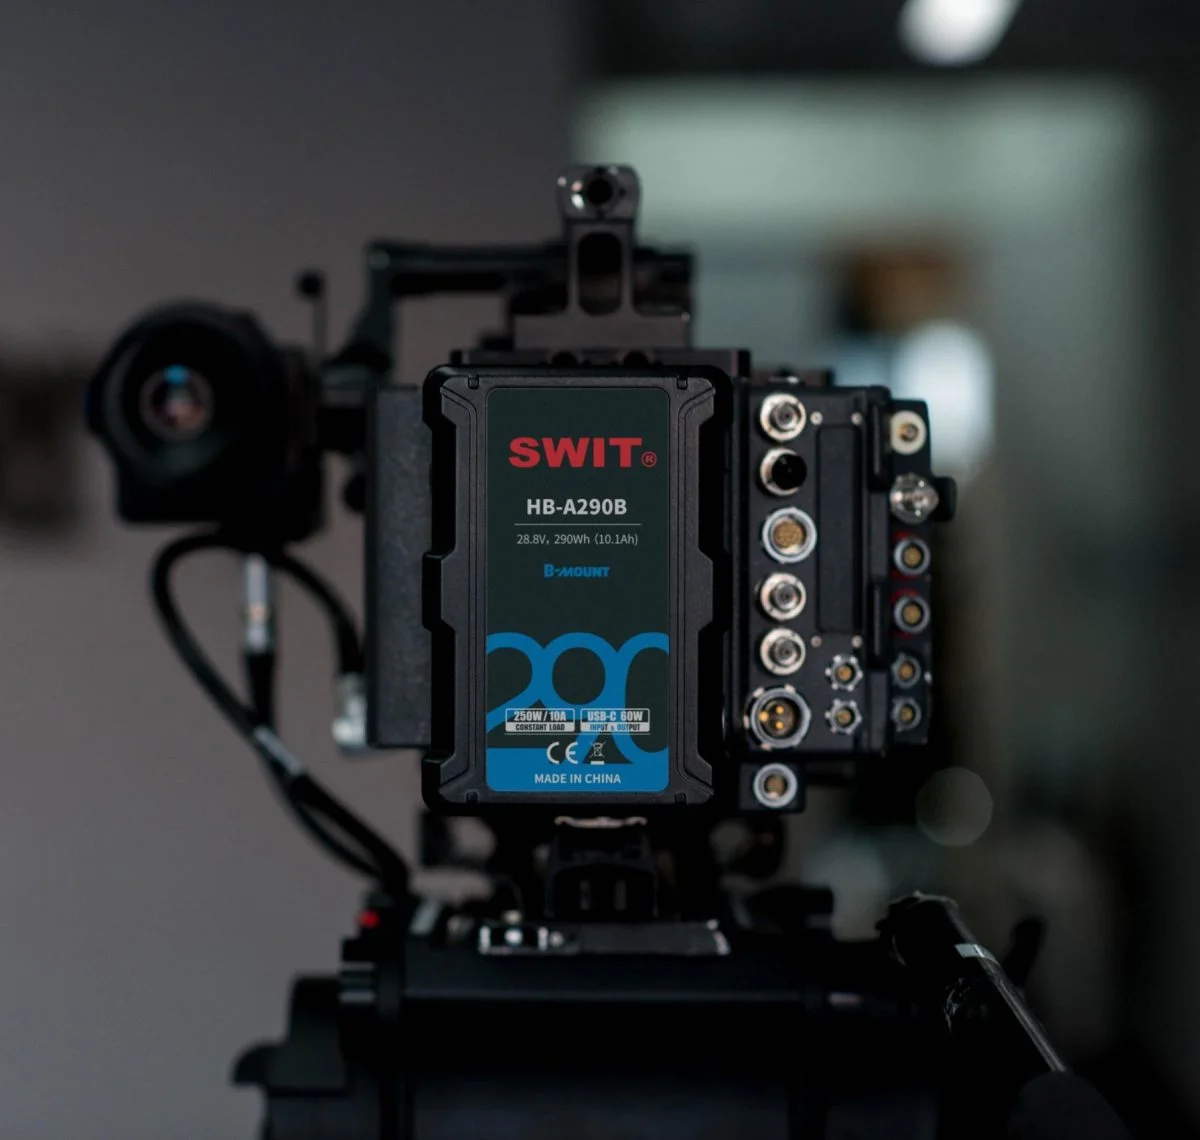 TV Tools is now part of SWIT’s worldwide retailer network